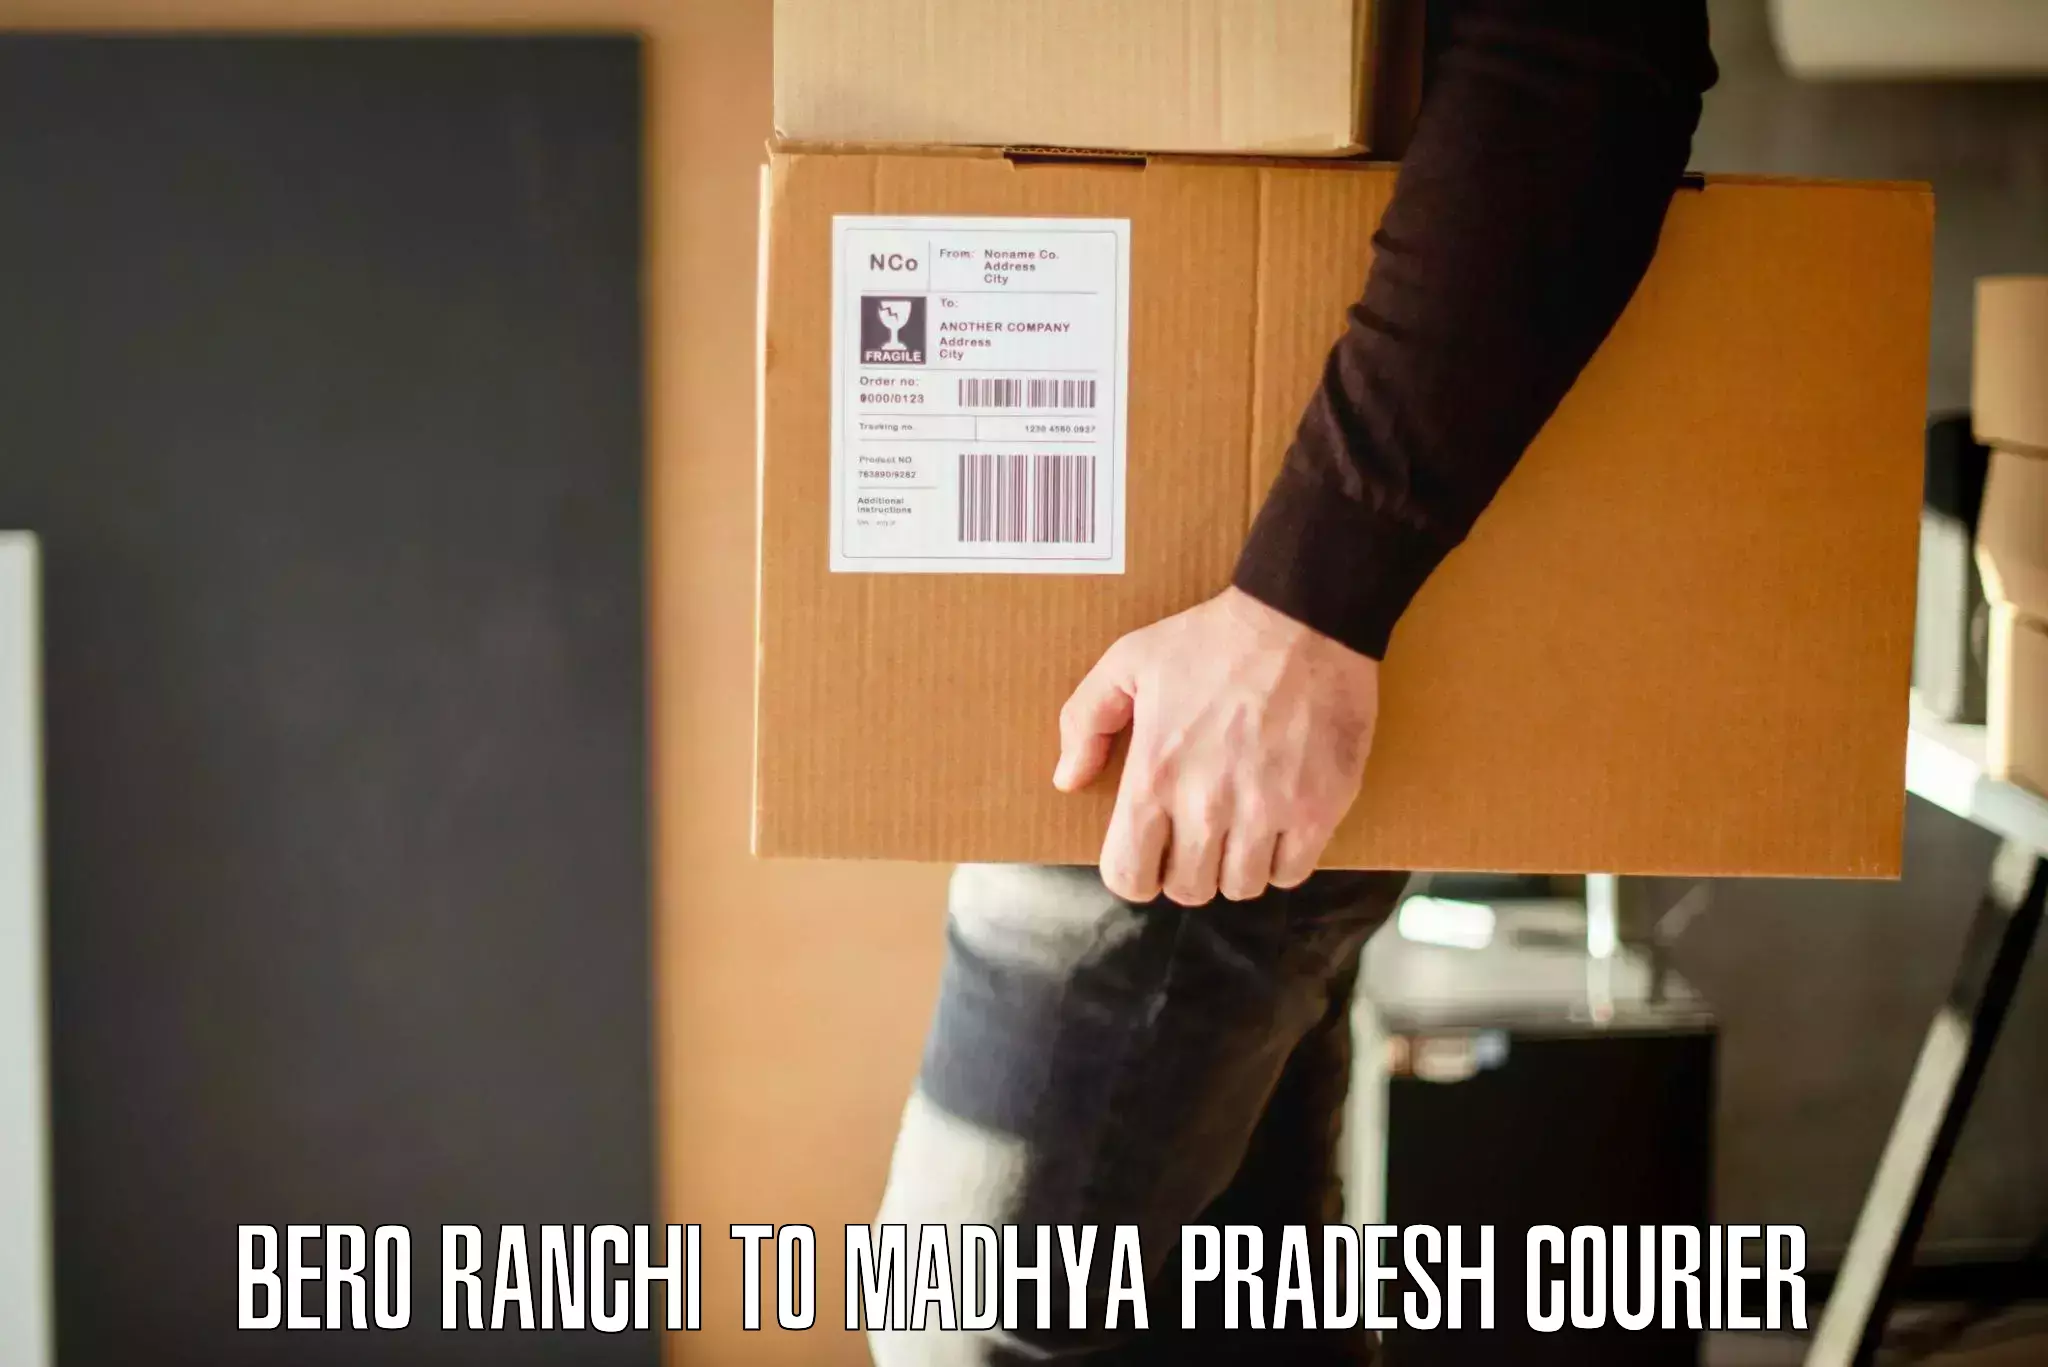 Moving and handling services Bero Ranchi to Chhindwara